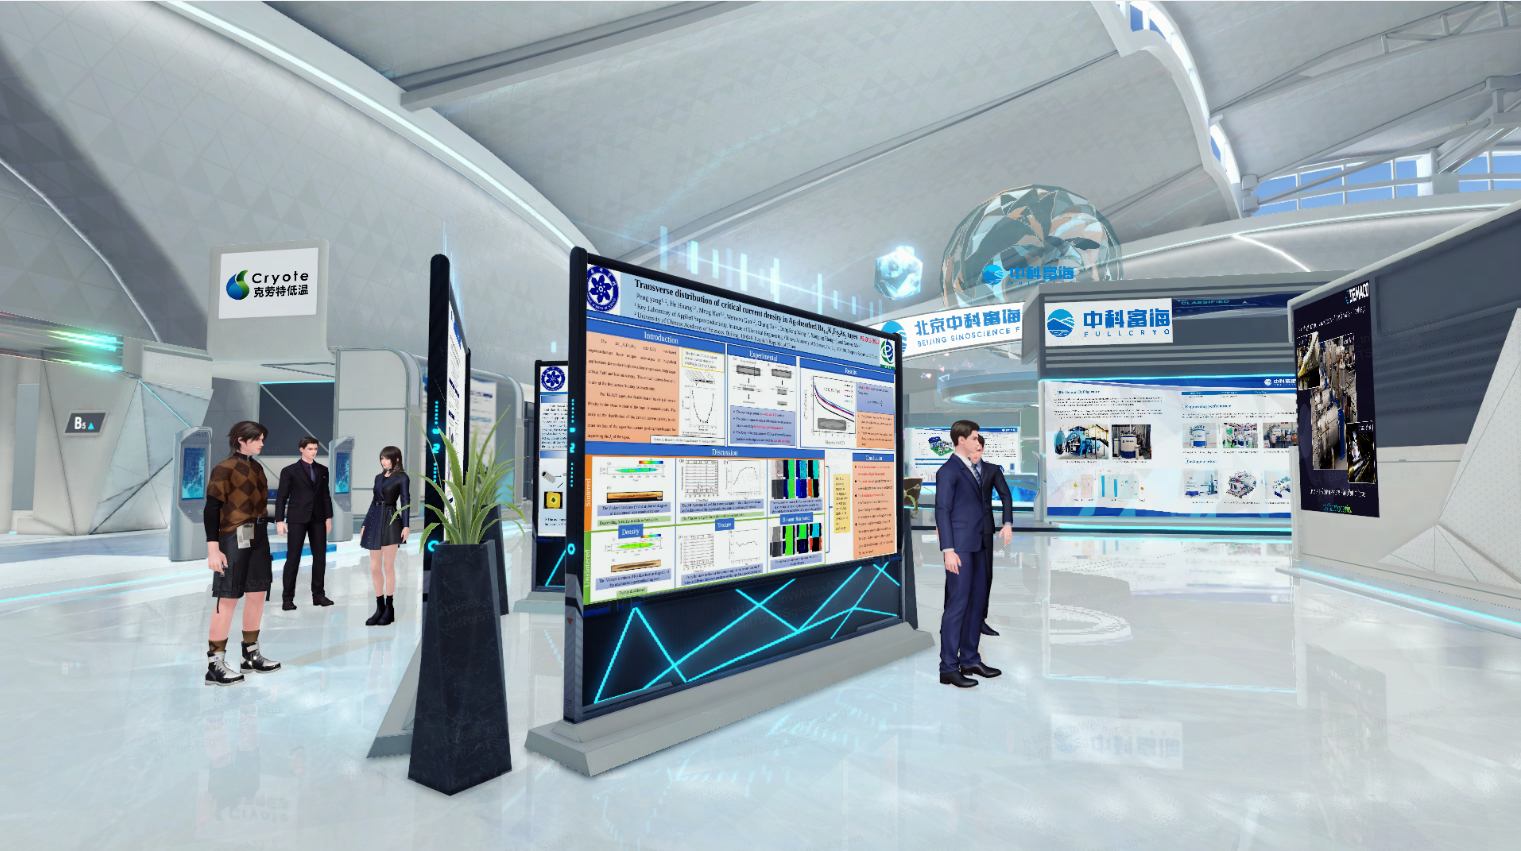 这是一张现代化展览厅的图片，展示了多个展板，几位参观者在观看，整体设计科技感强，色调以白色和蓝色为主。